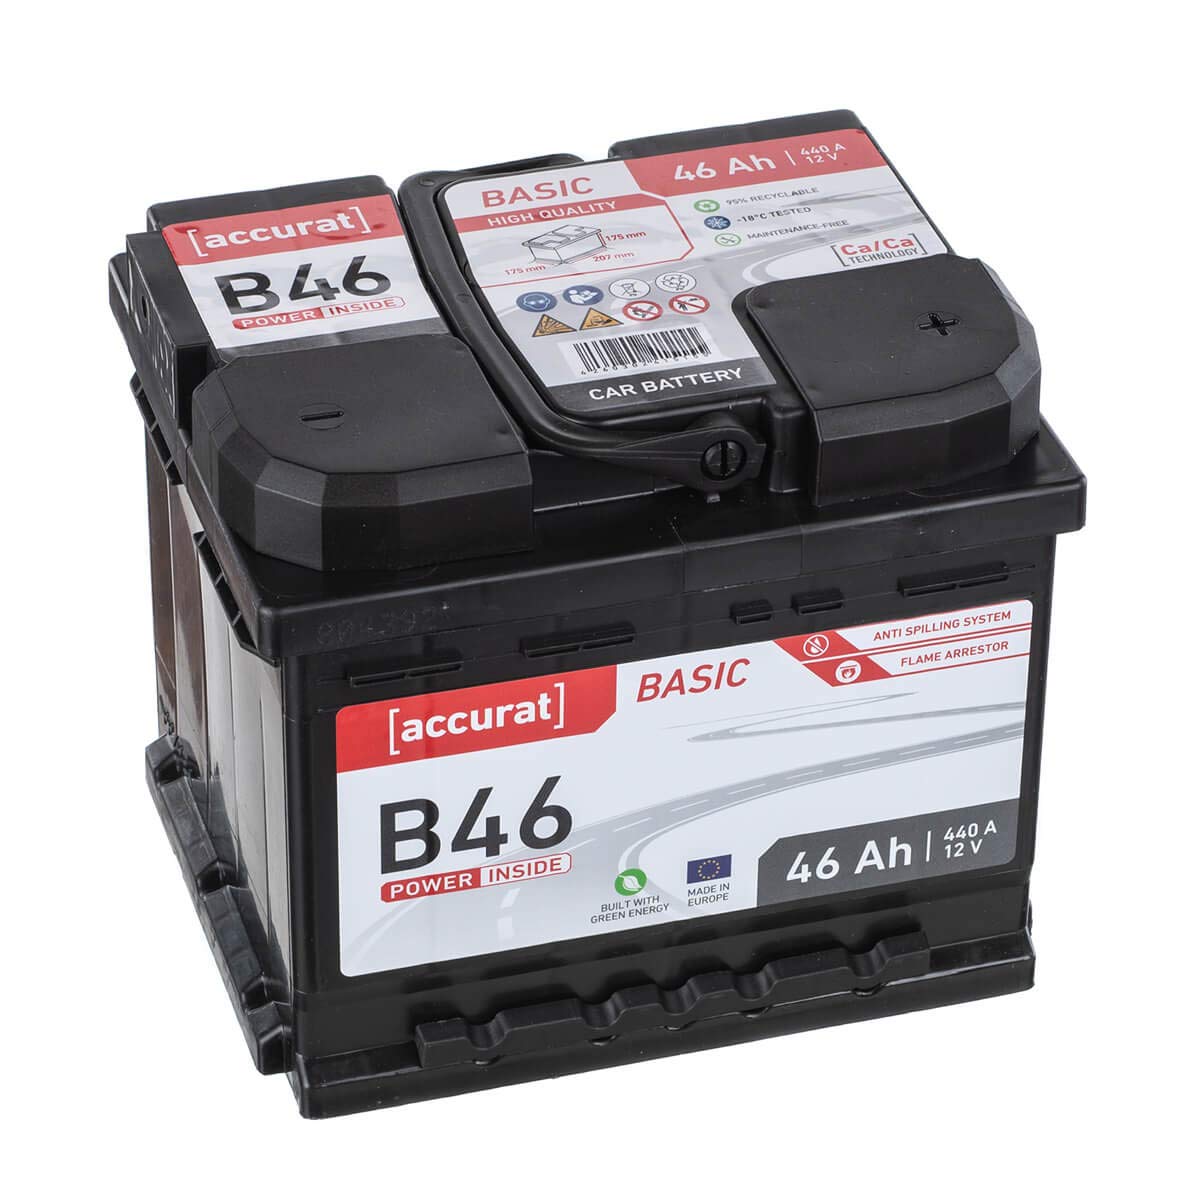 Accurat Basic B46 Autobatterie - 12V, 46Ah, 400A, zyklenfest, wartungsfrei, 30% mehr Startleistung, Ca-Technologie, Pluspol rechts - Starterbatterie, Nassbatterie, Blei-Säure Batterie von Accurat